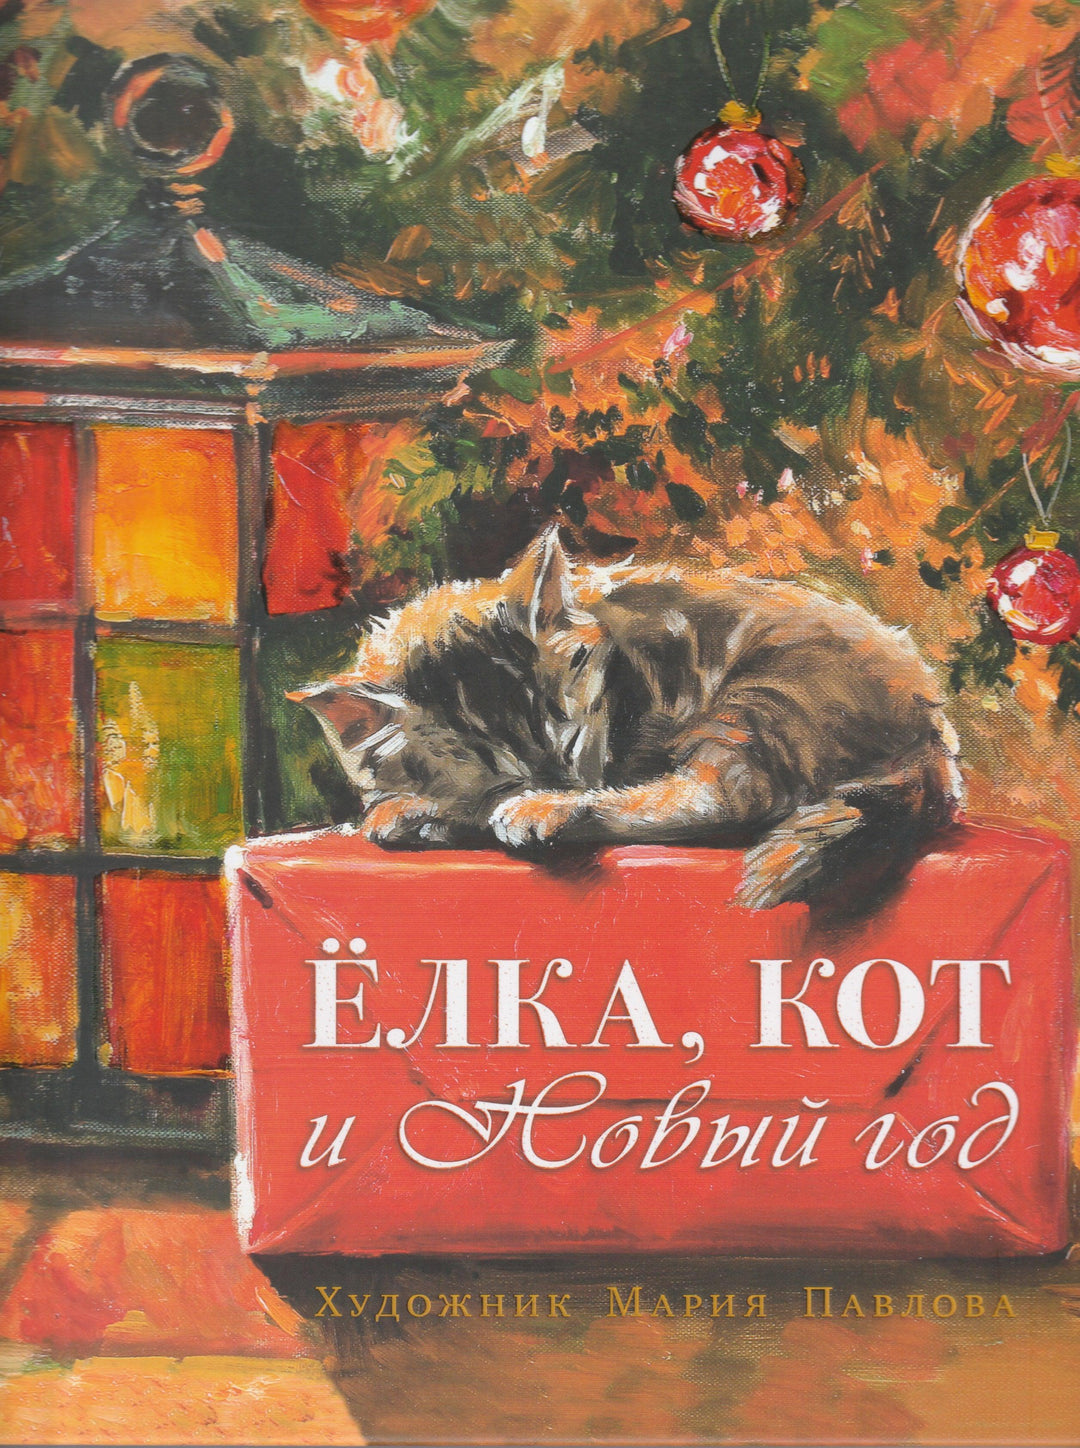 Елка, кот и Новый год-Мартынова К.-Речь-Lookomorie